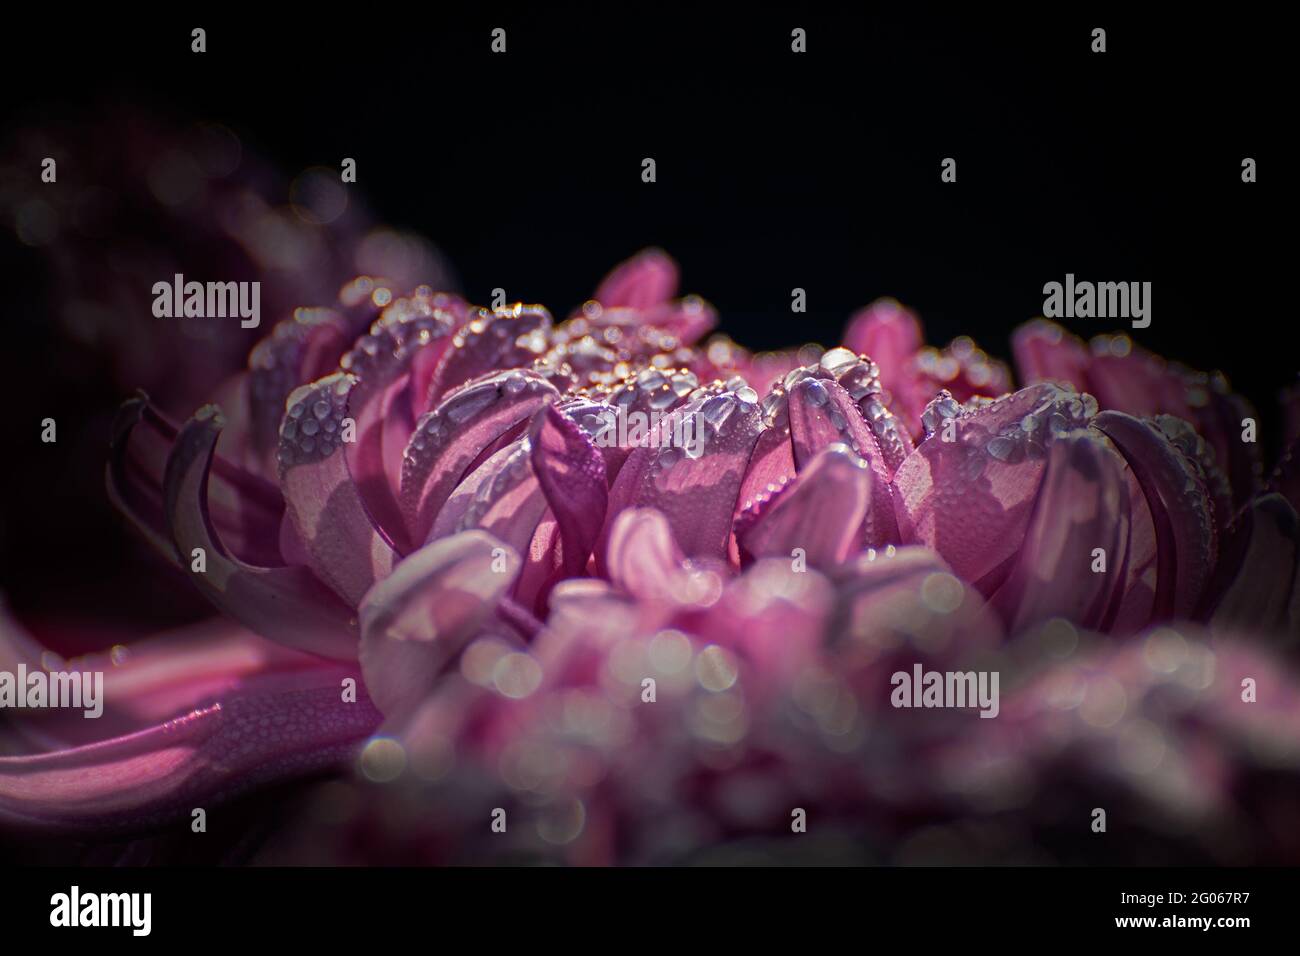 Künstlerisches Blumenbild, rosa Dahlia-Blütenblätter mit leuchtenden Tau-Tropfen auf ihnen, dunkelschwarzer kontrastierender Hintergrund, Naturfotographie Stockfoto